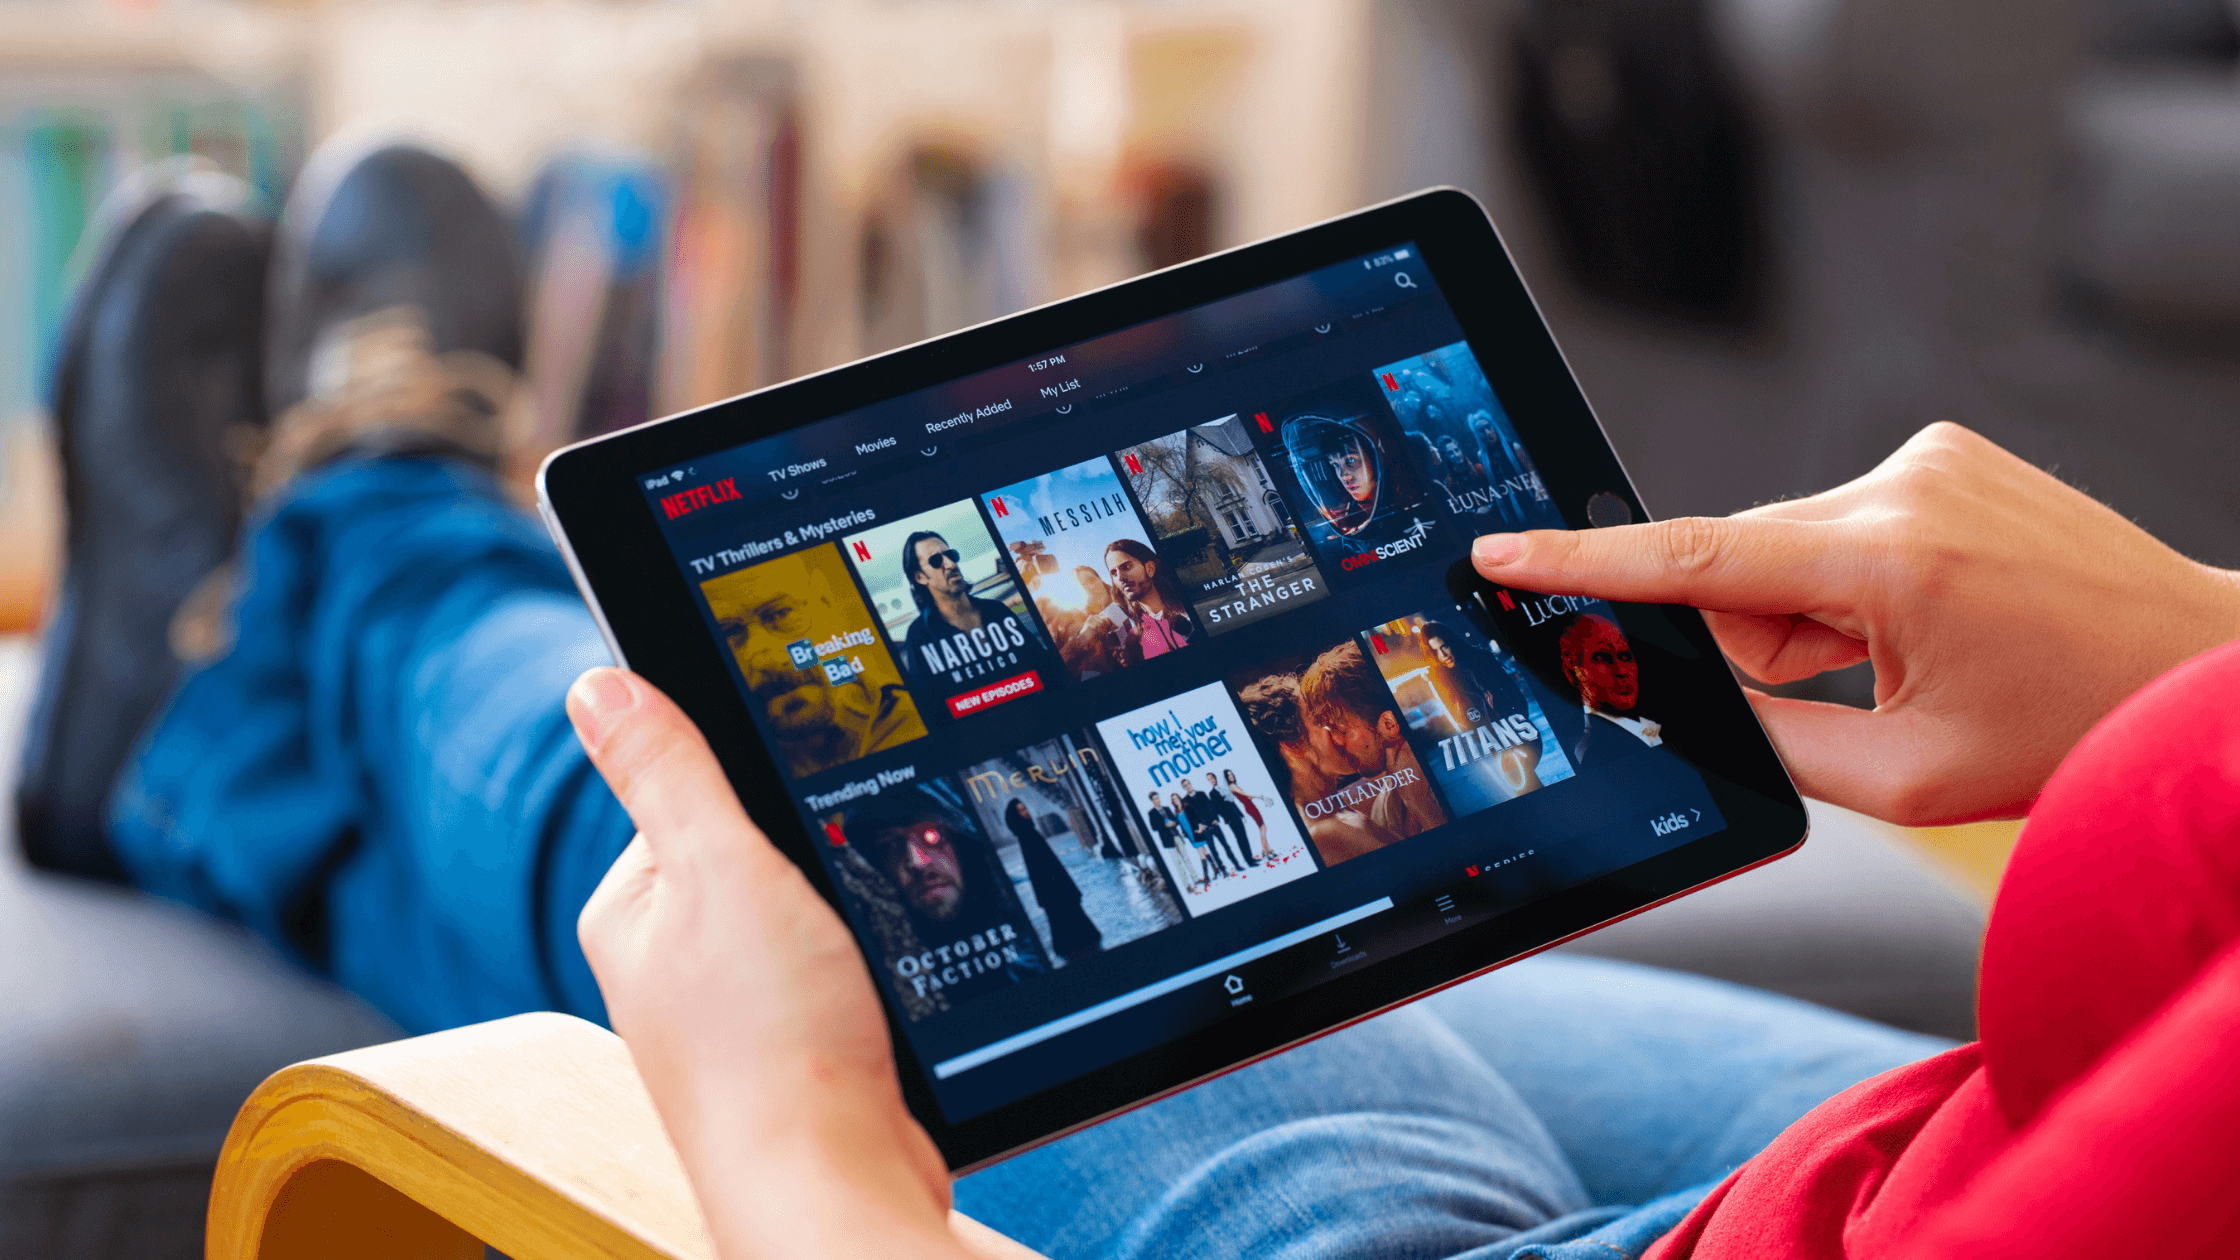 5 Key Takeaways From Netflix’s Earnings